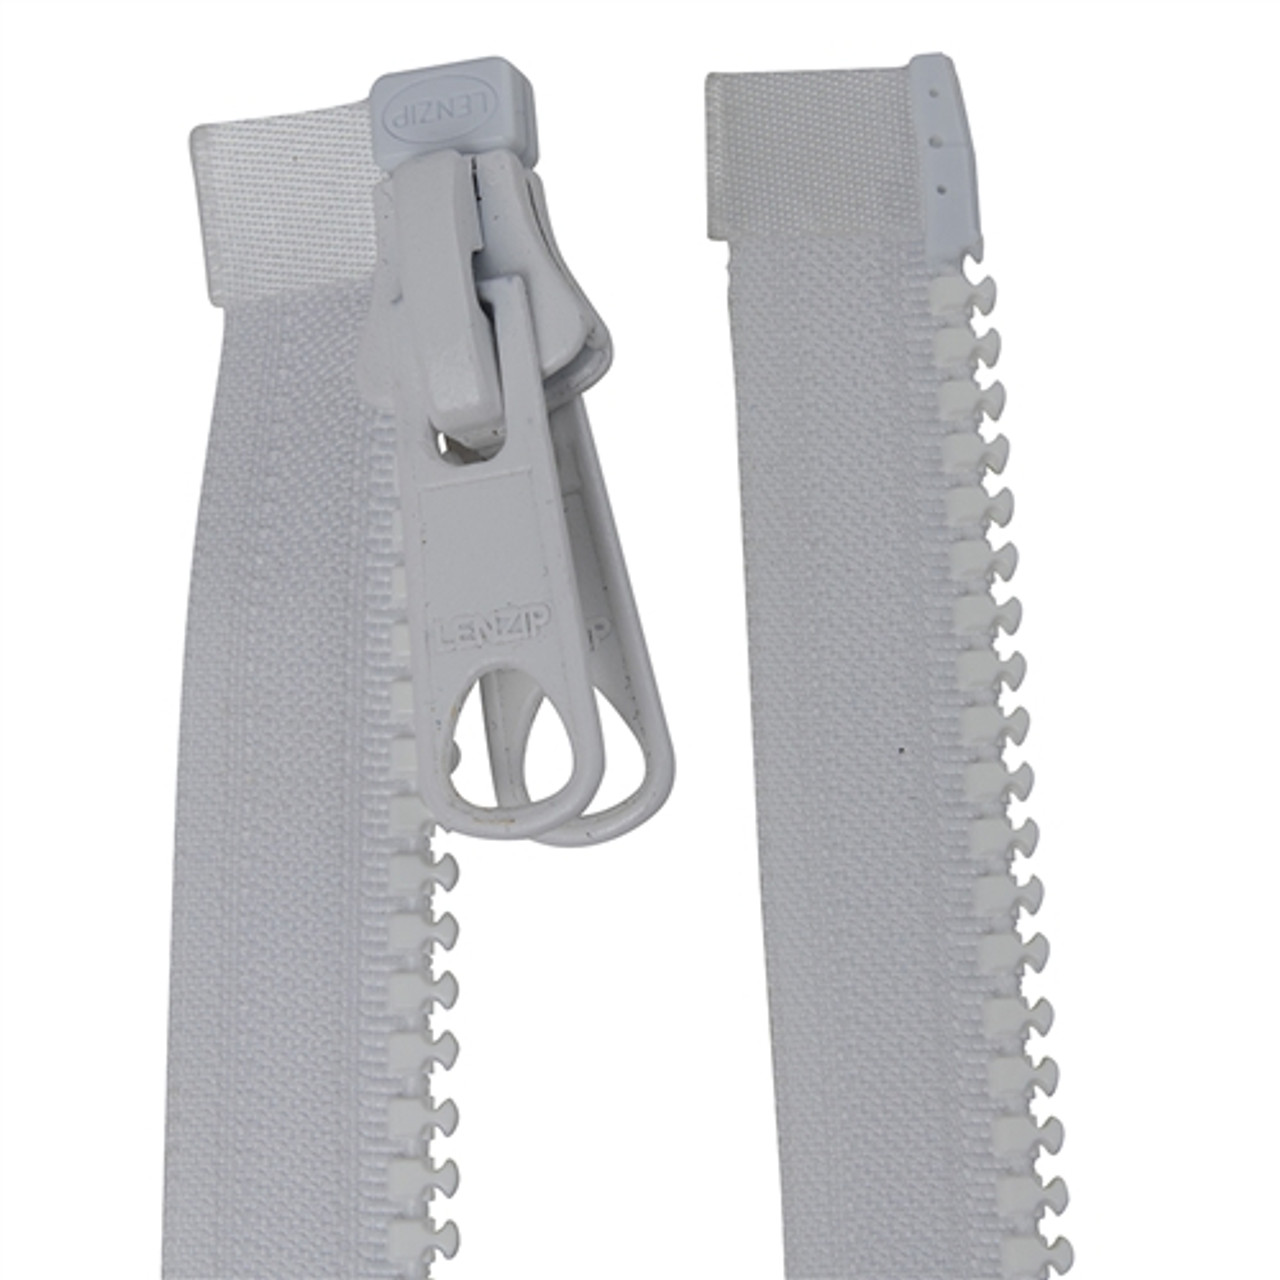 LENZIP #10 5 - 150 Plastic Molded Separating Zipper for Jacket